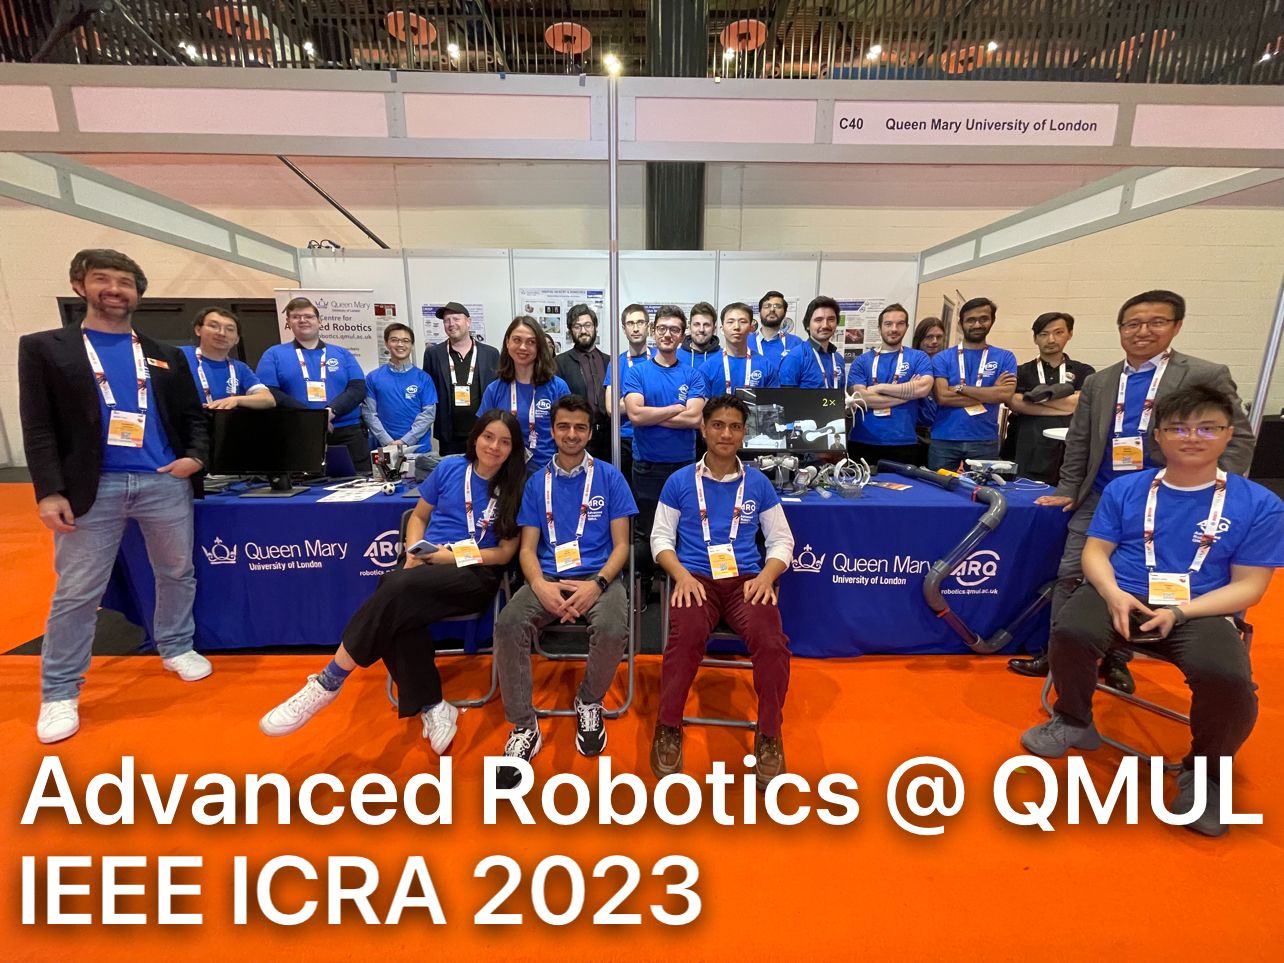 QMUL robotics team at IEEE ICRA 2023